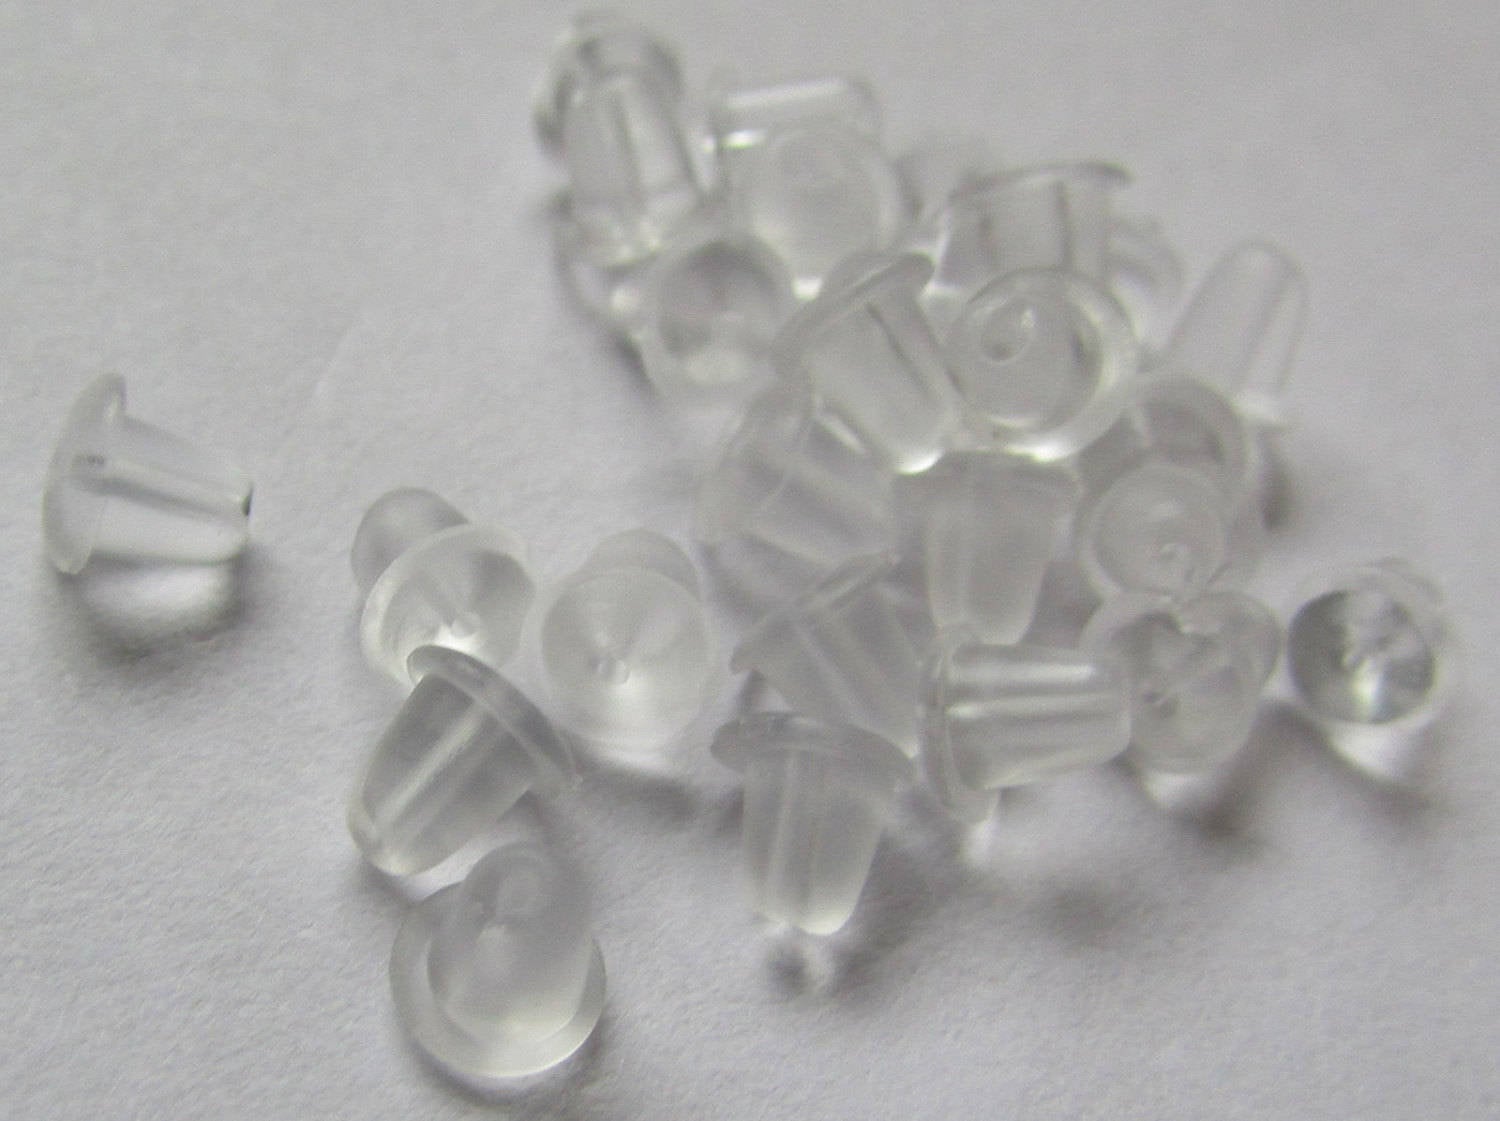 Cheap 1000x Small Rubber Earring Backs Stoppers Ear Bullet Shape Safety  Clear Bulk | Joom